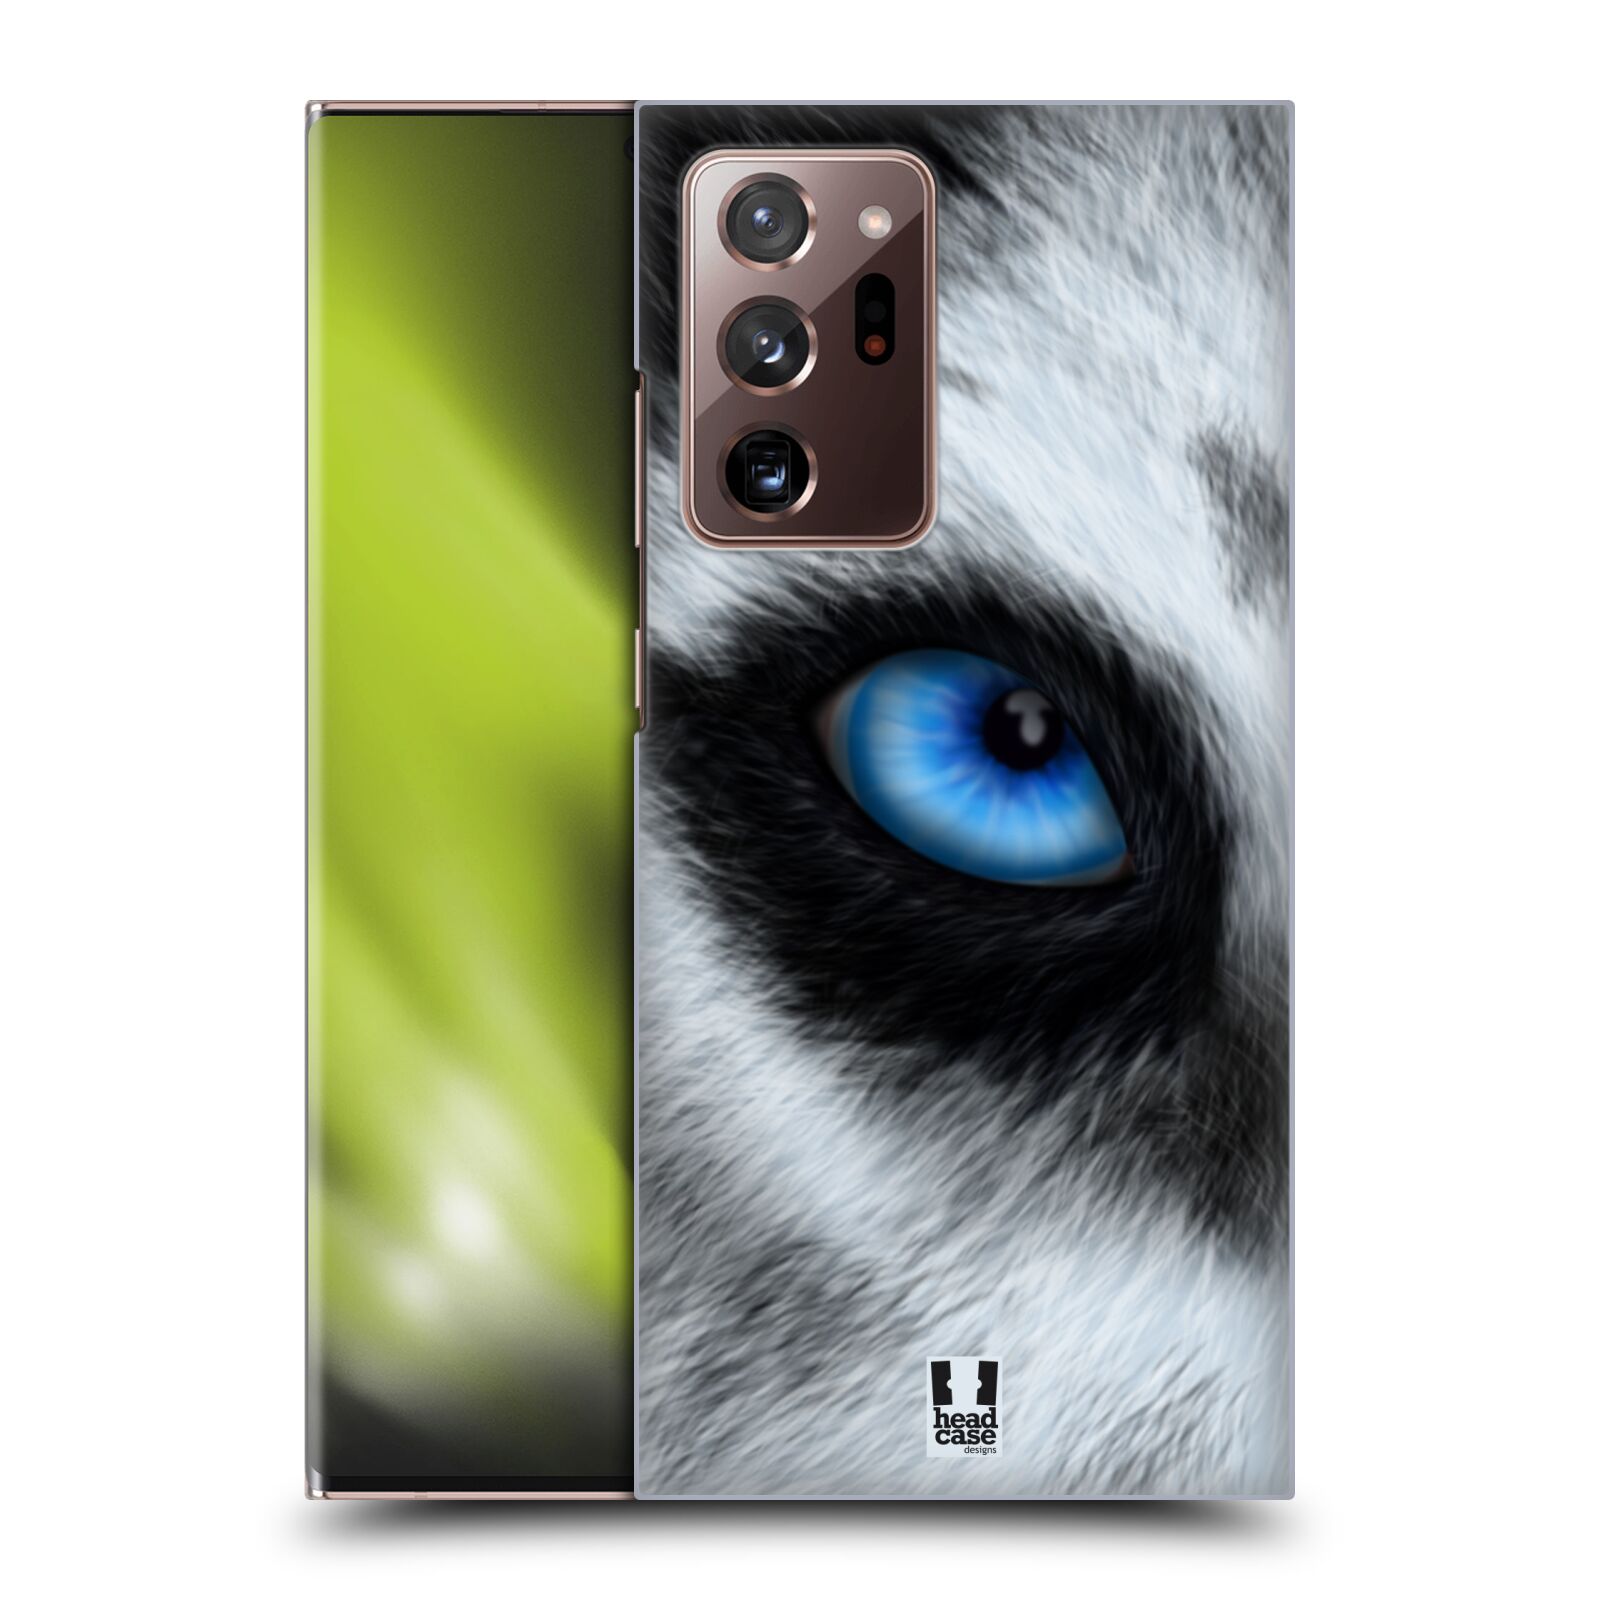 Plastový obal HEAD CASE na mobil Samsung Galaxy Note 20 ULTRA vzor pohled zvířete oko pes husky